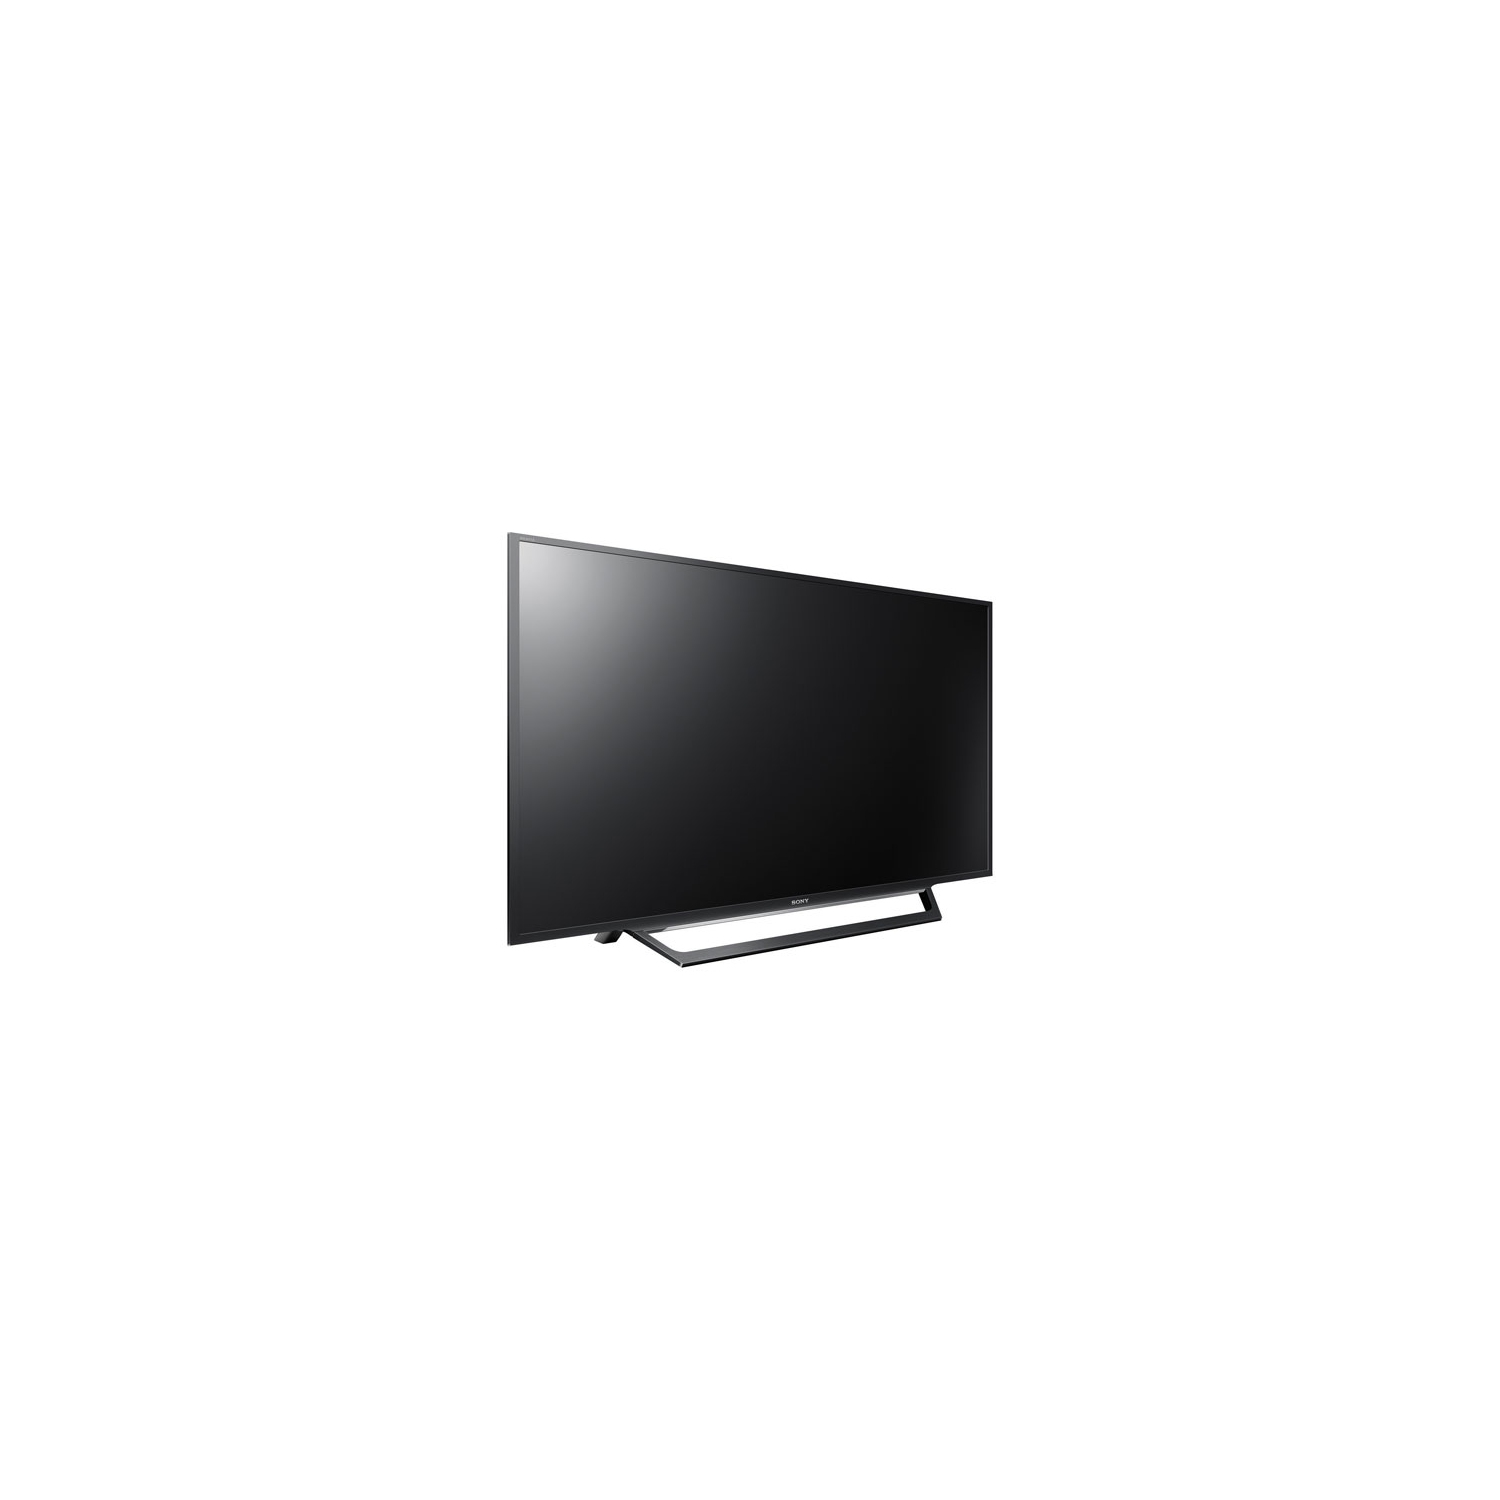 Sony 32" 720p LED Smart TV (KDL32W600D) - Open Box